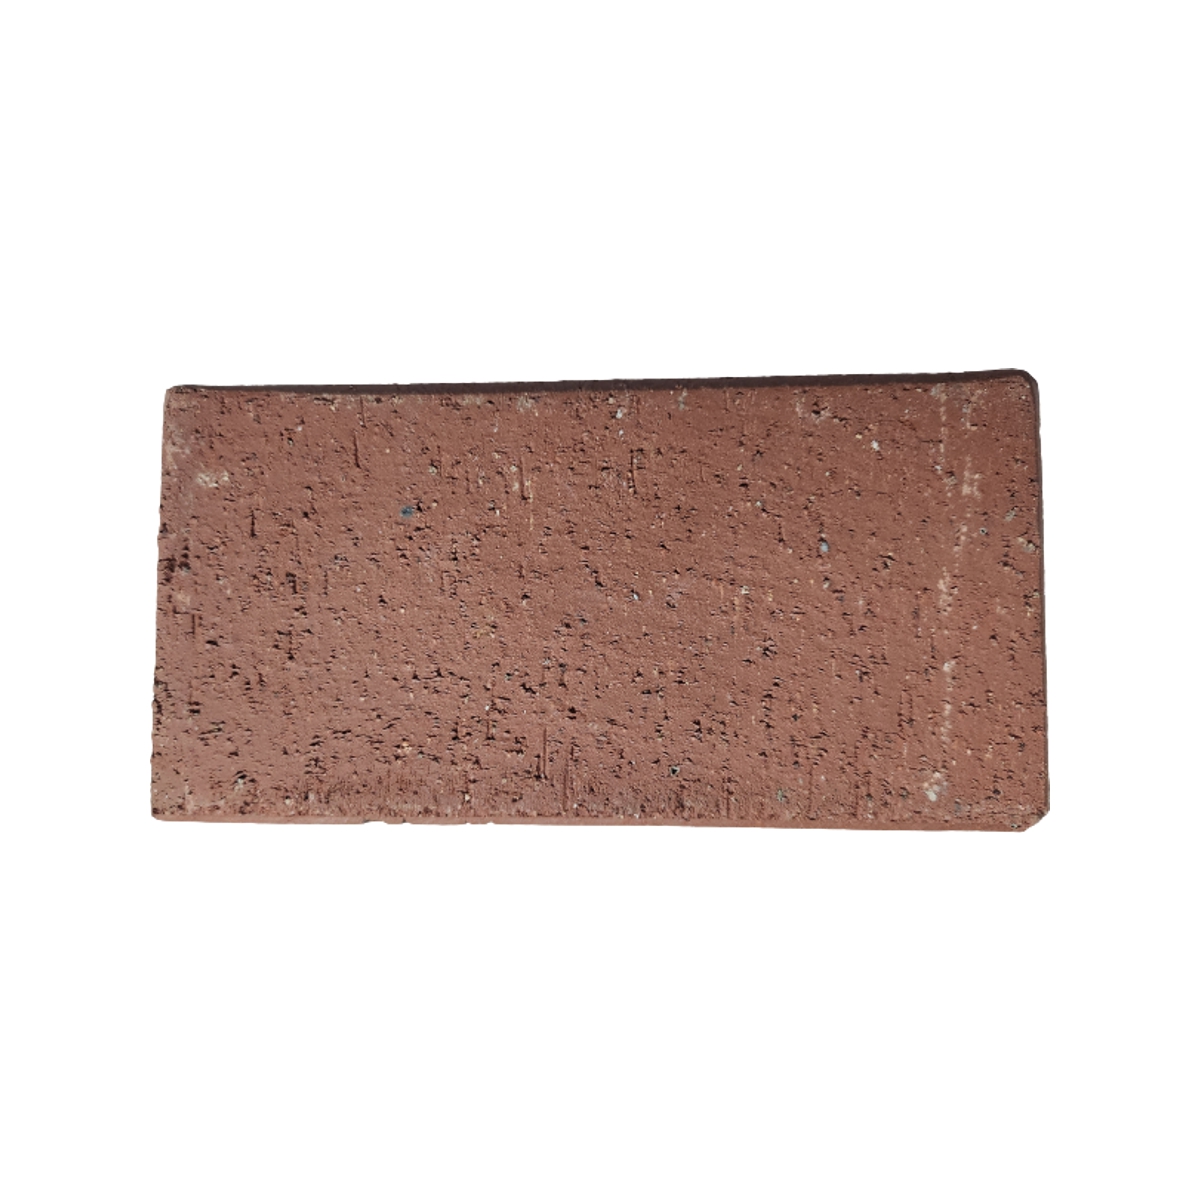 Lasered Red Clay Brick 4×8 – Fenton Memorials